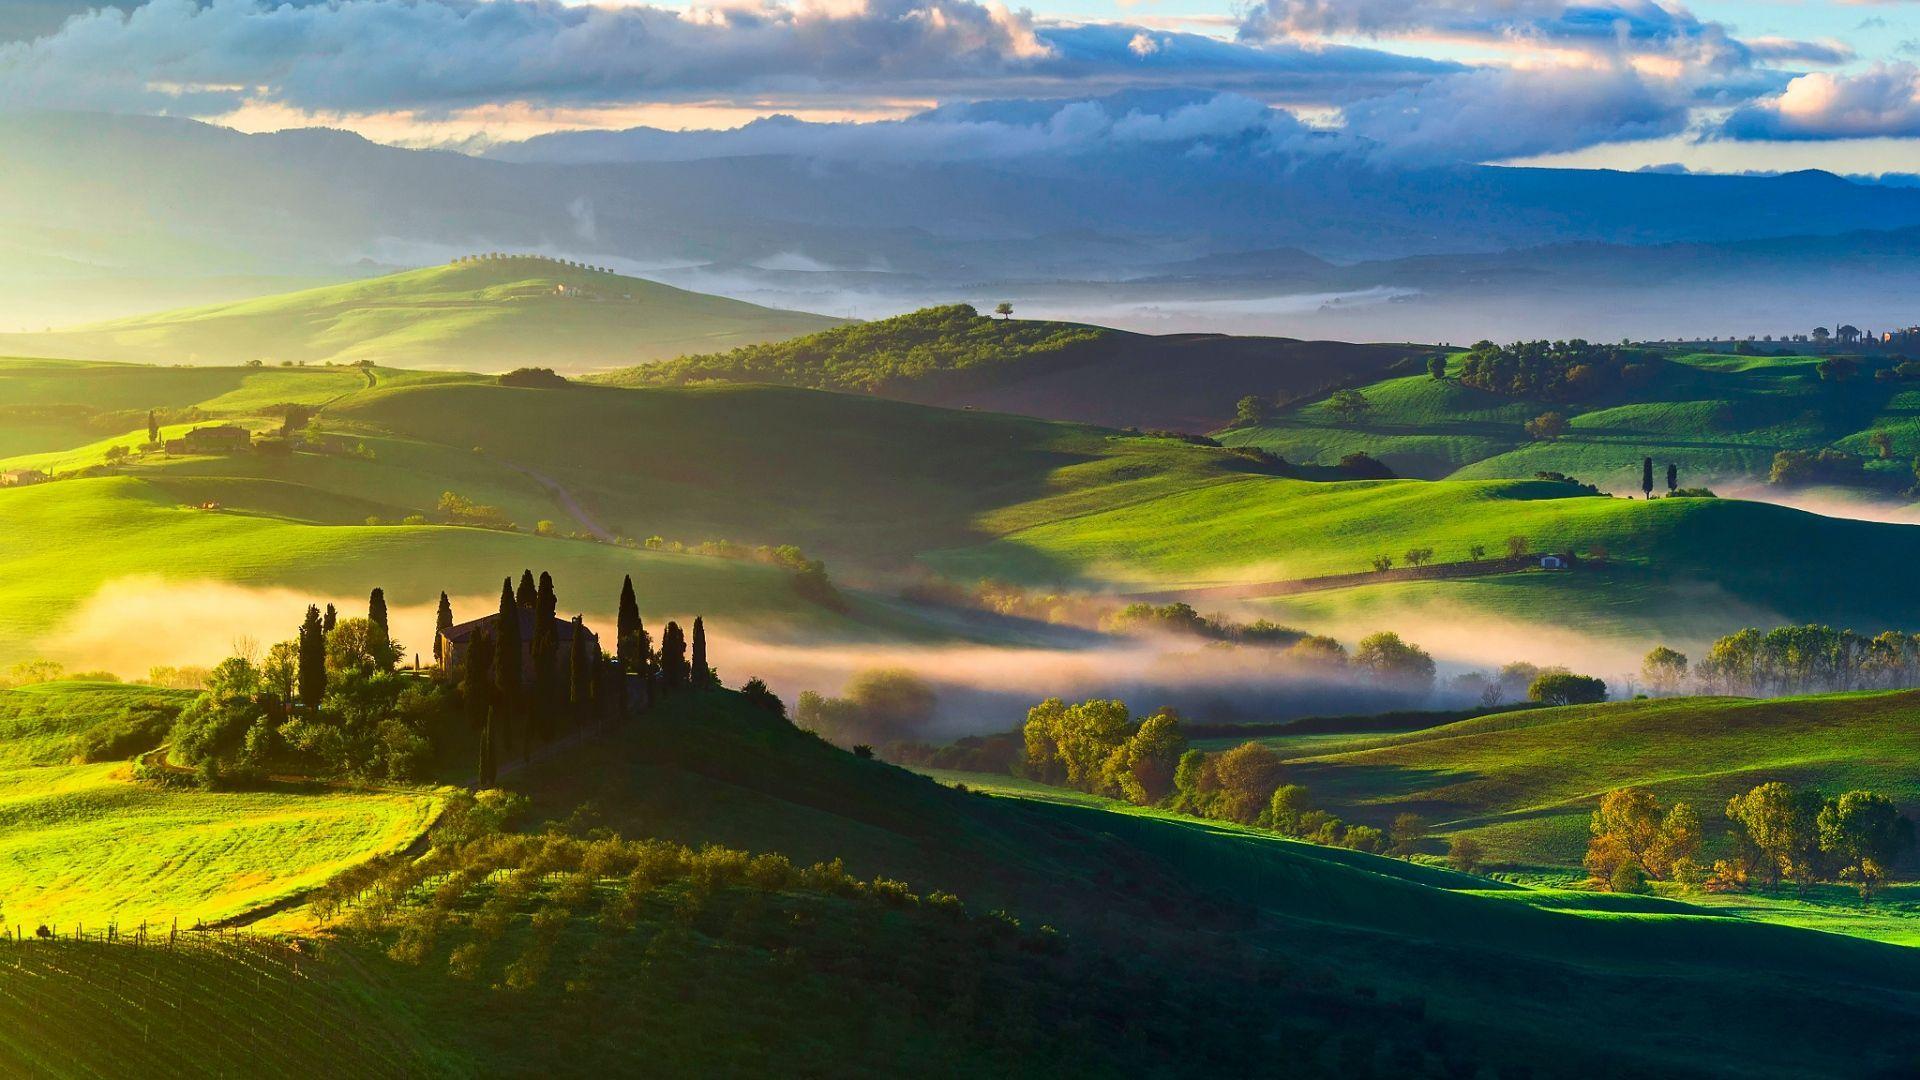 Hình nền HD Ý sẽ đem đến cho bạn những hình ảnh đẹp và hoàn hảo nhất của quốc gia nắm giữ Trái đất. Bạn sẽ có cơ hội thưởng thức khung cảnh đa dạng, từ những tán cây rợp bóng đến những nền trời bất tận và màu sắc chuyển động vô cùng đặc biệt.